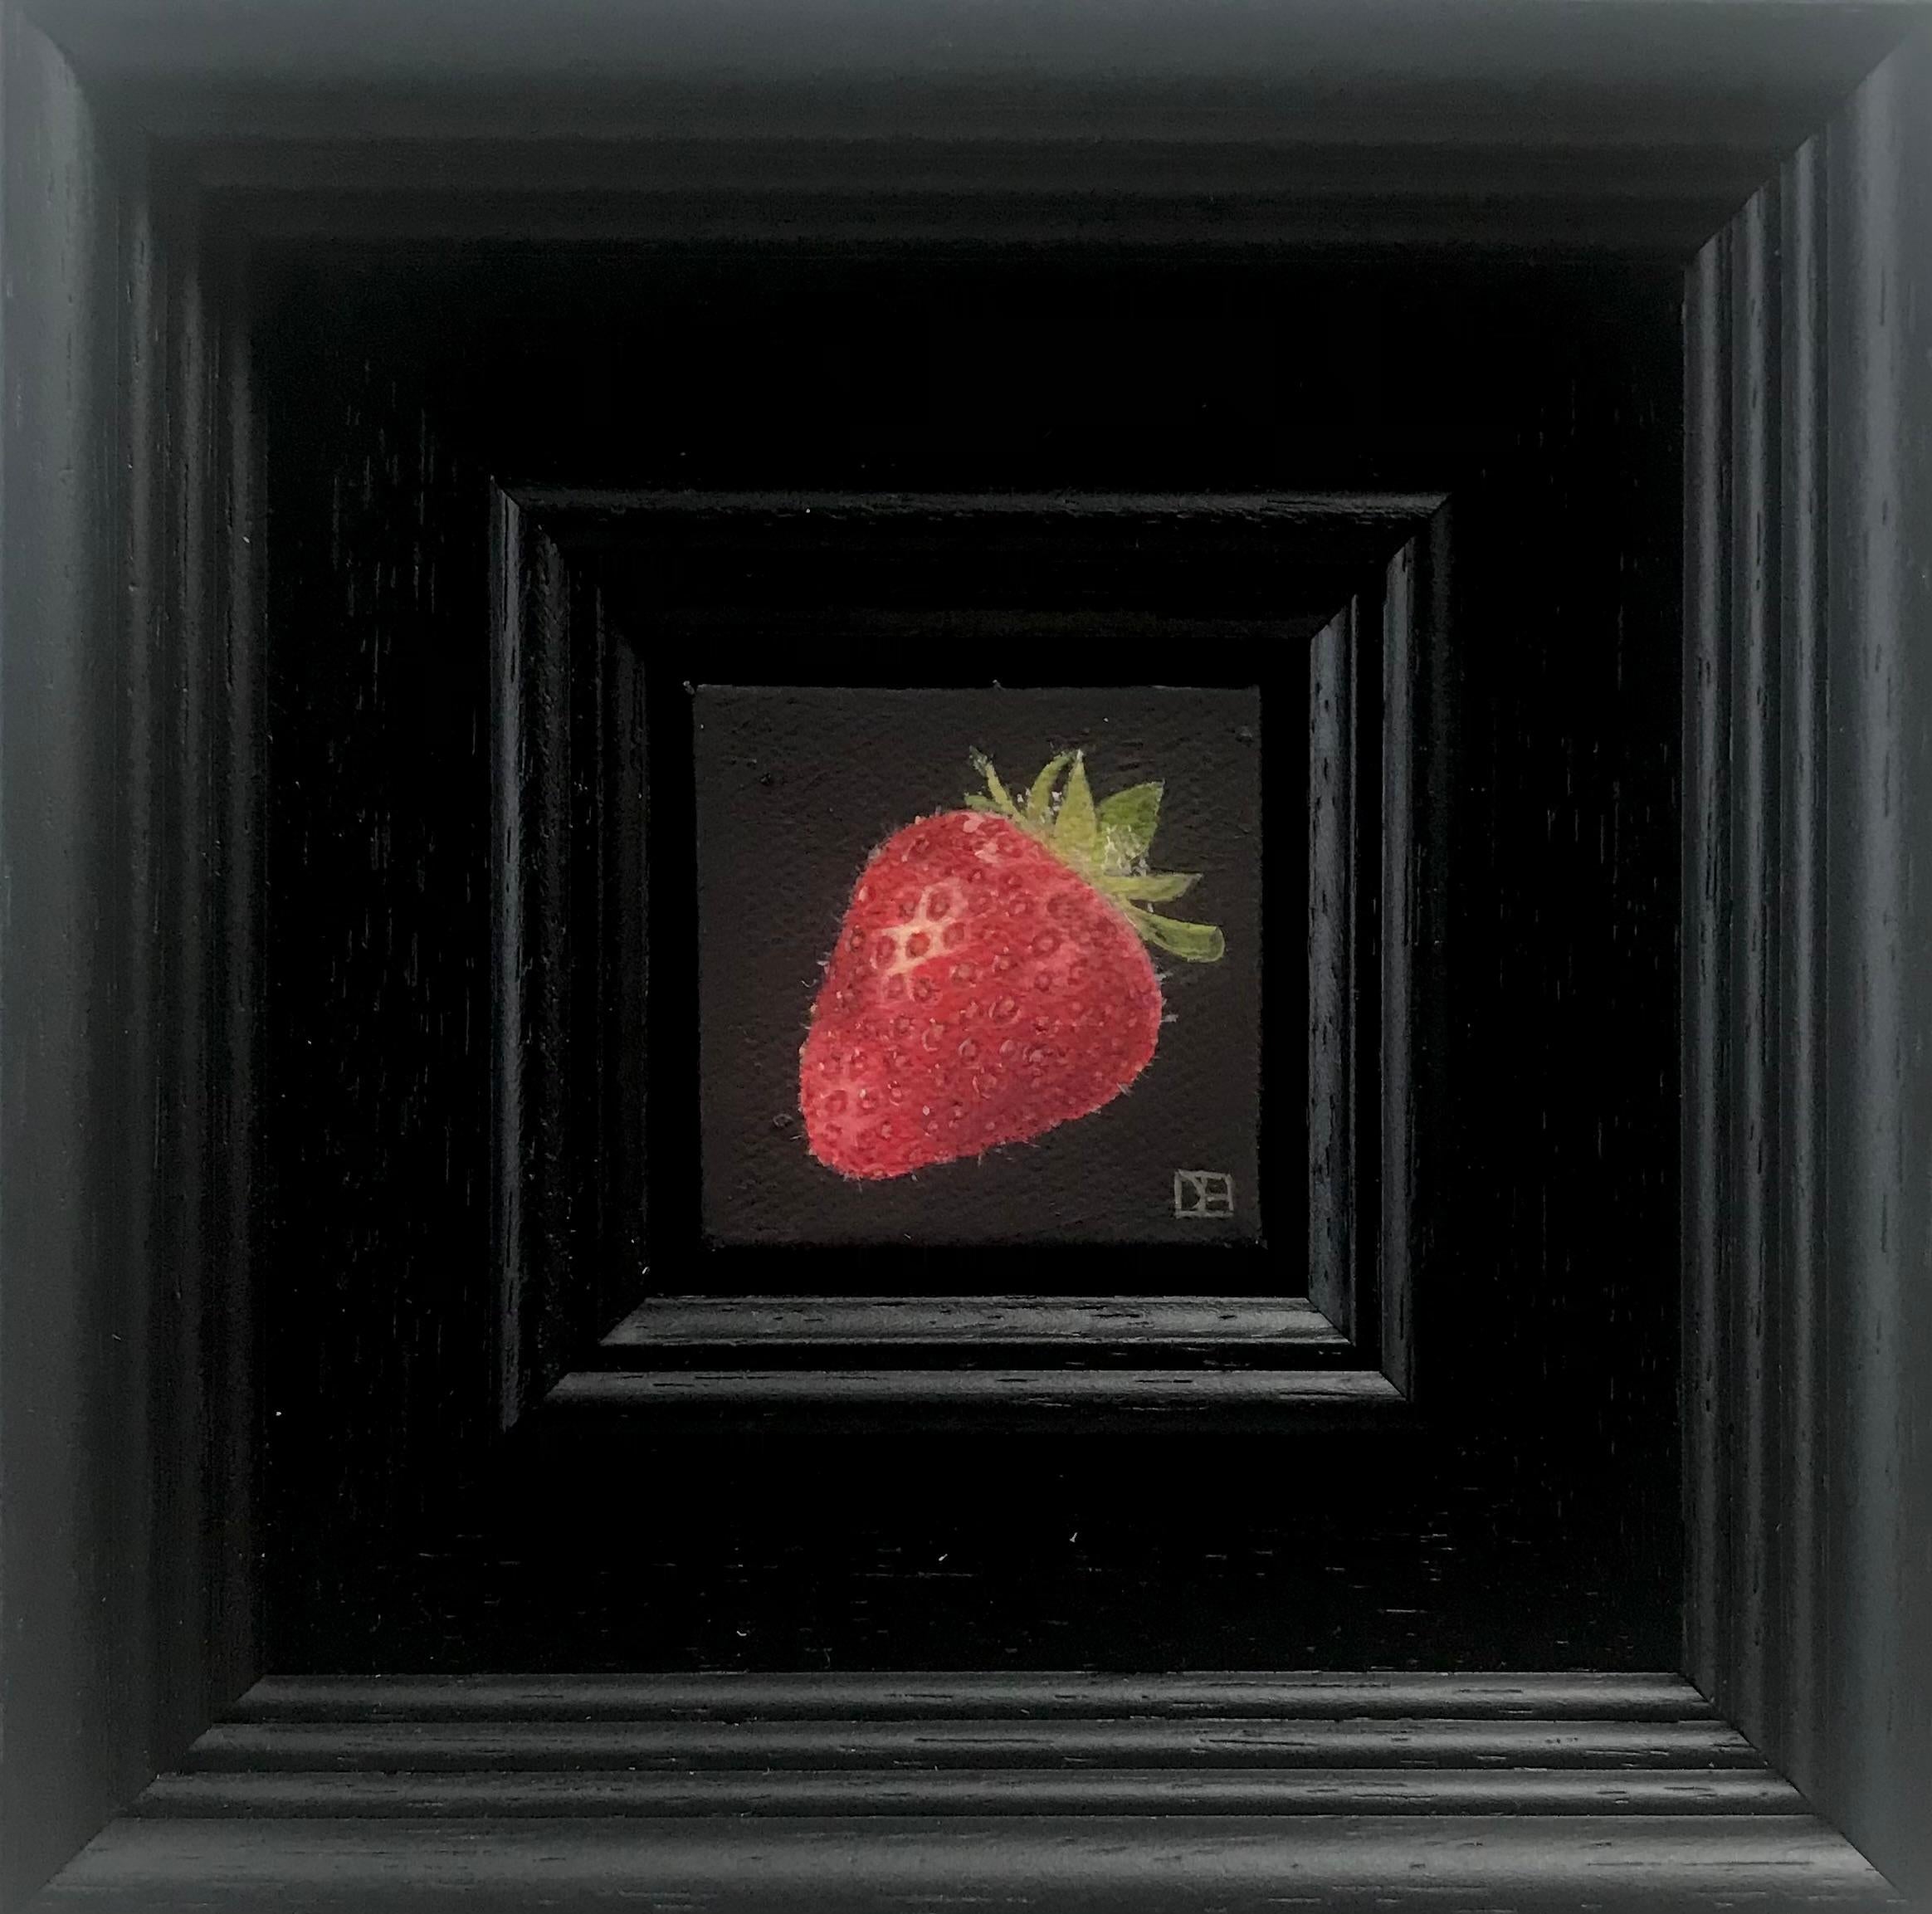 Pocket Strawberry von Dani Humberstone [2022]
original und handsigniert vom Künstler 

Öl auf Leinwand

Bildgröße: H:5 cm x B:5 cm

Gesamtgröße des ungerahmten Werks: H:5 cm x B:5 cm x T:3,5cm

Rahmengröße: H:16 cm x B:16 cm x T:4cm

Verkauft